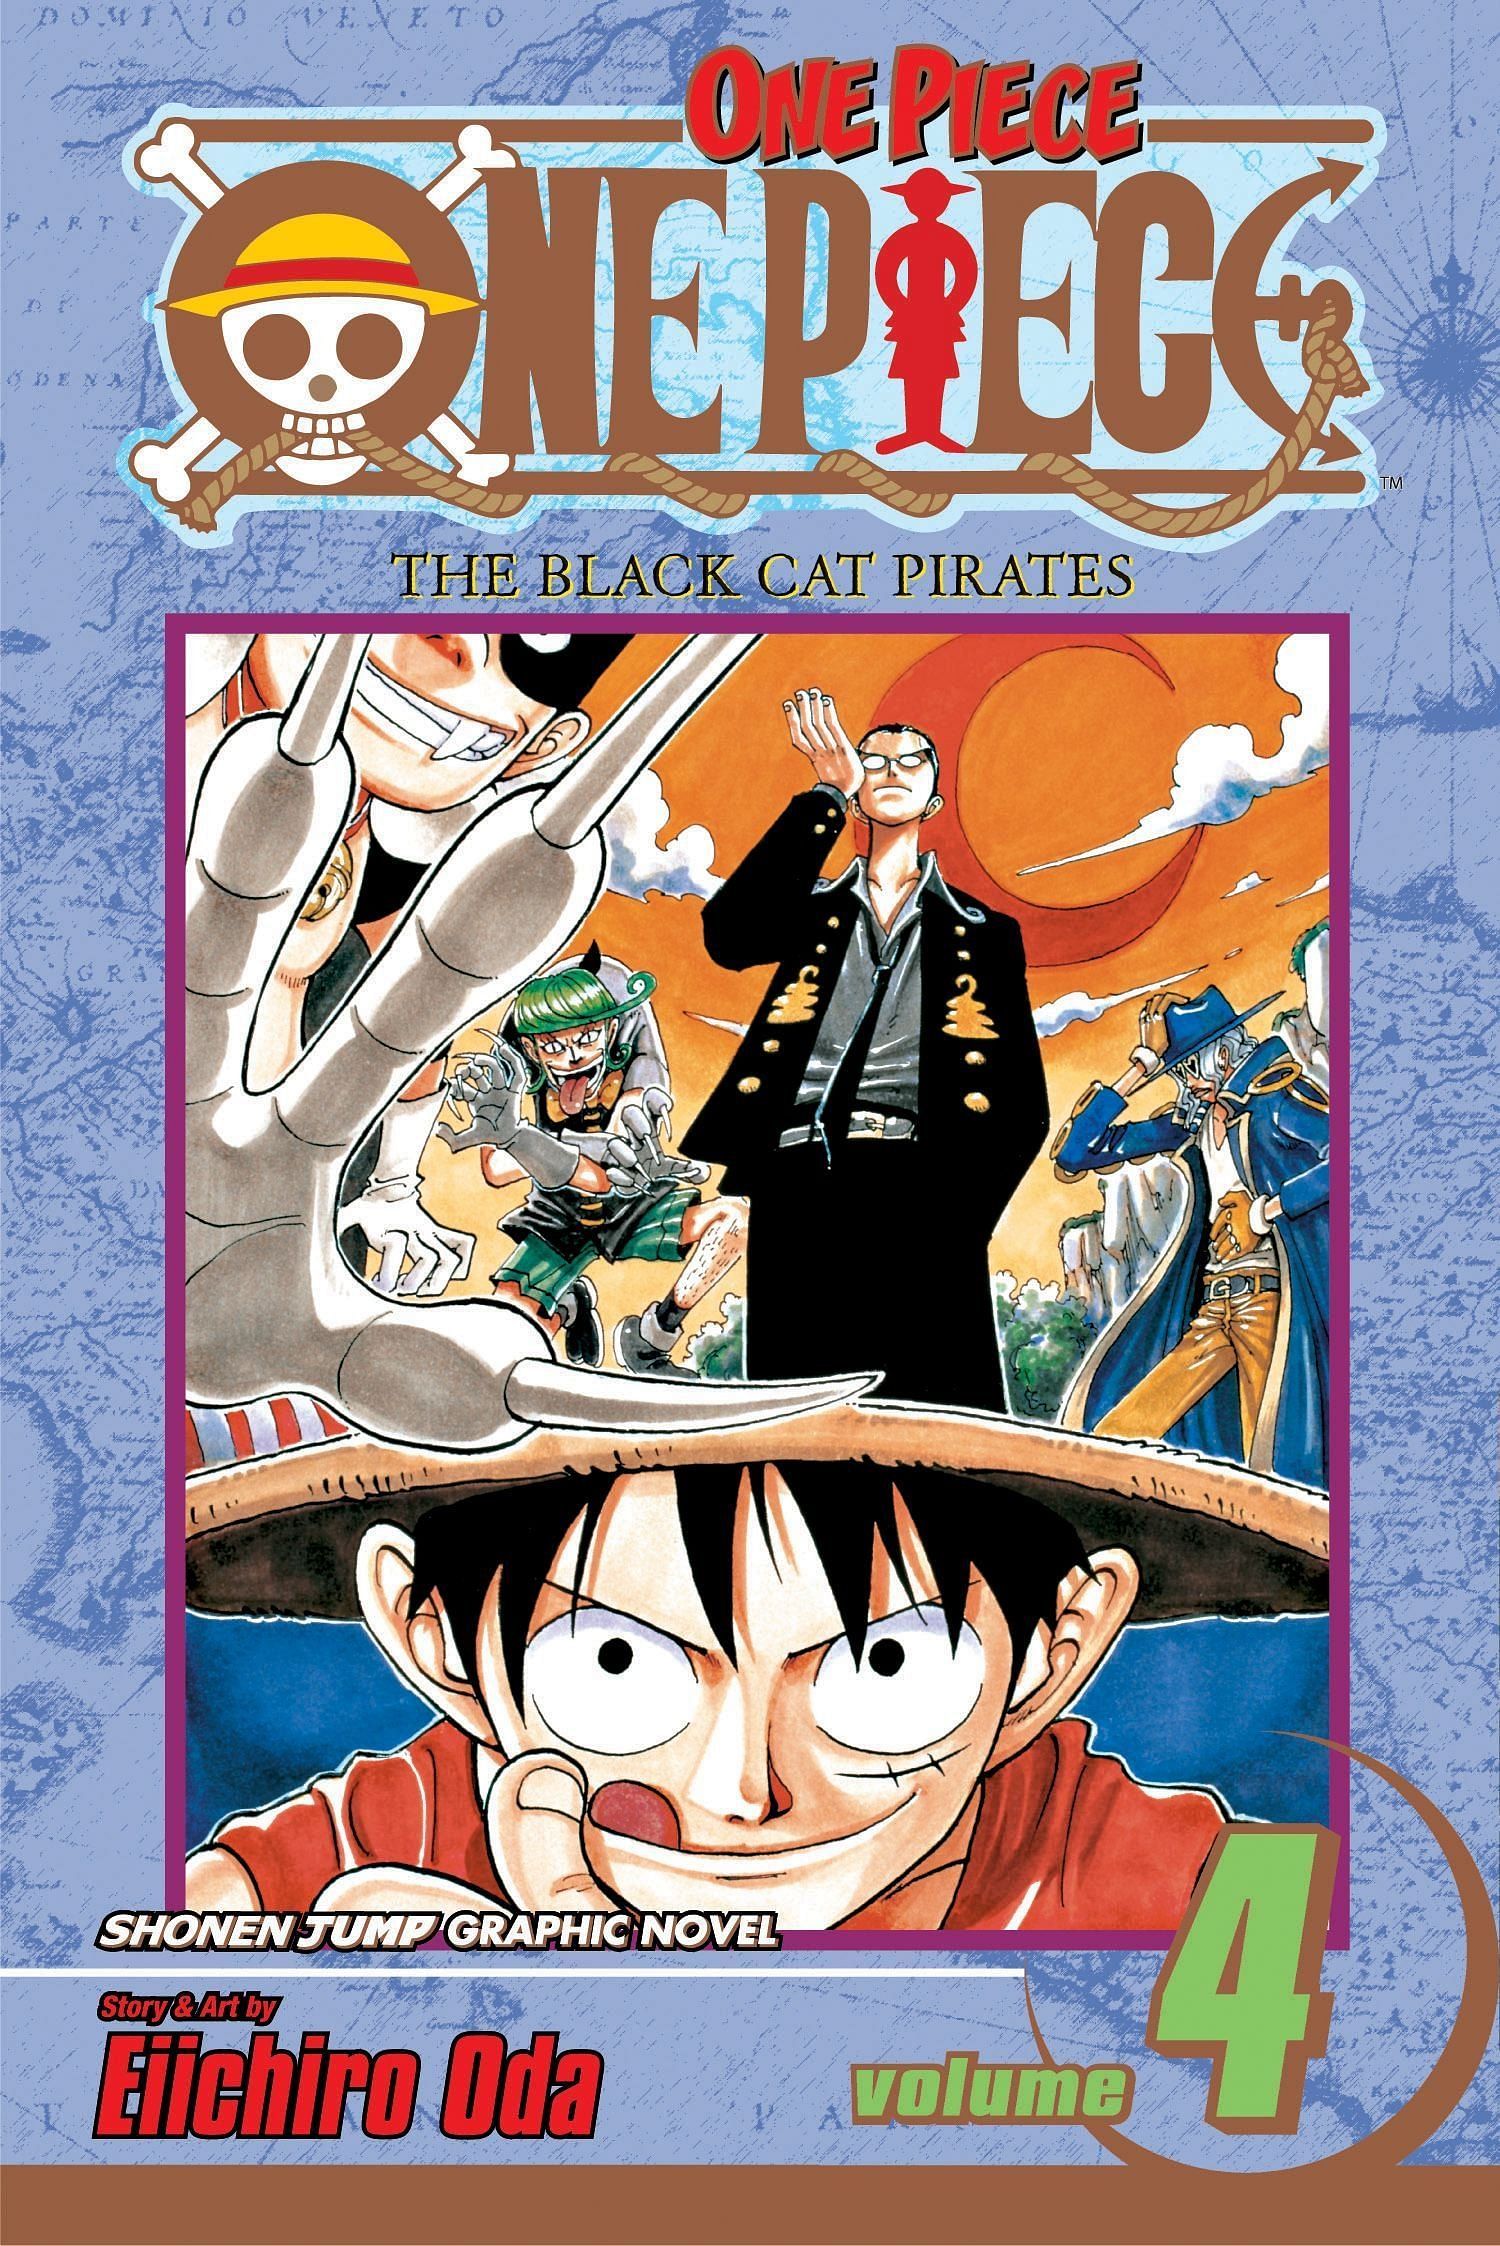 The cover art for One Piece Volume 4 (Image via Shueisha)